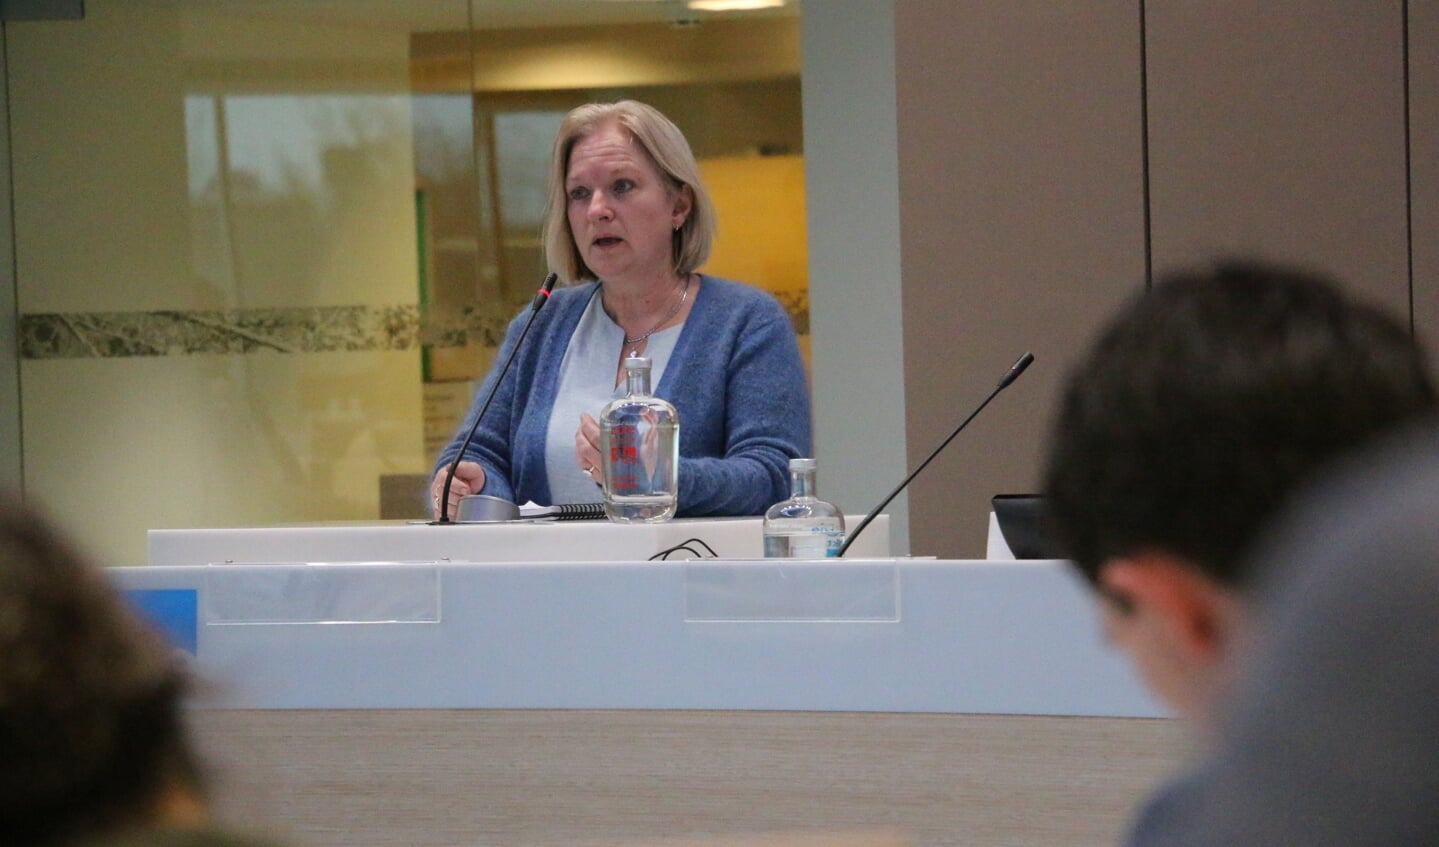 Ellen Out van GroenLinks tijdens haar betoog in de raadzaal.